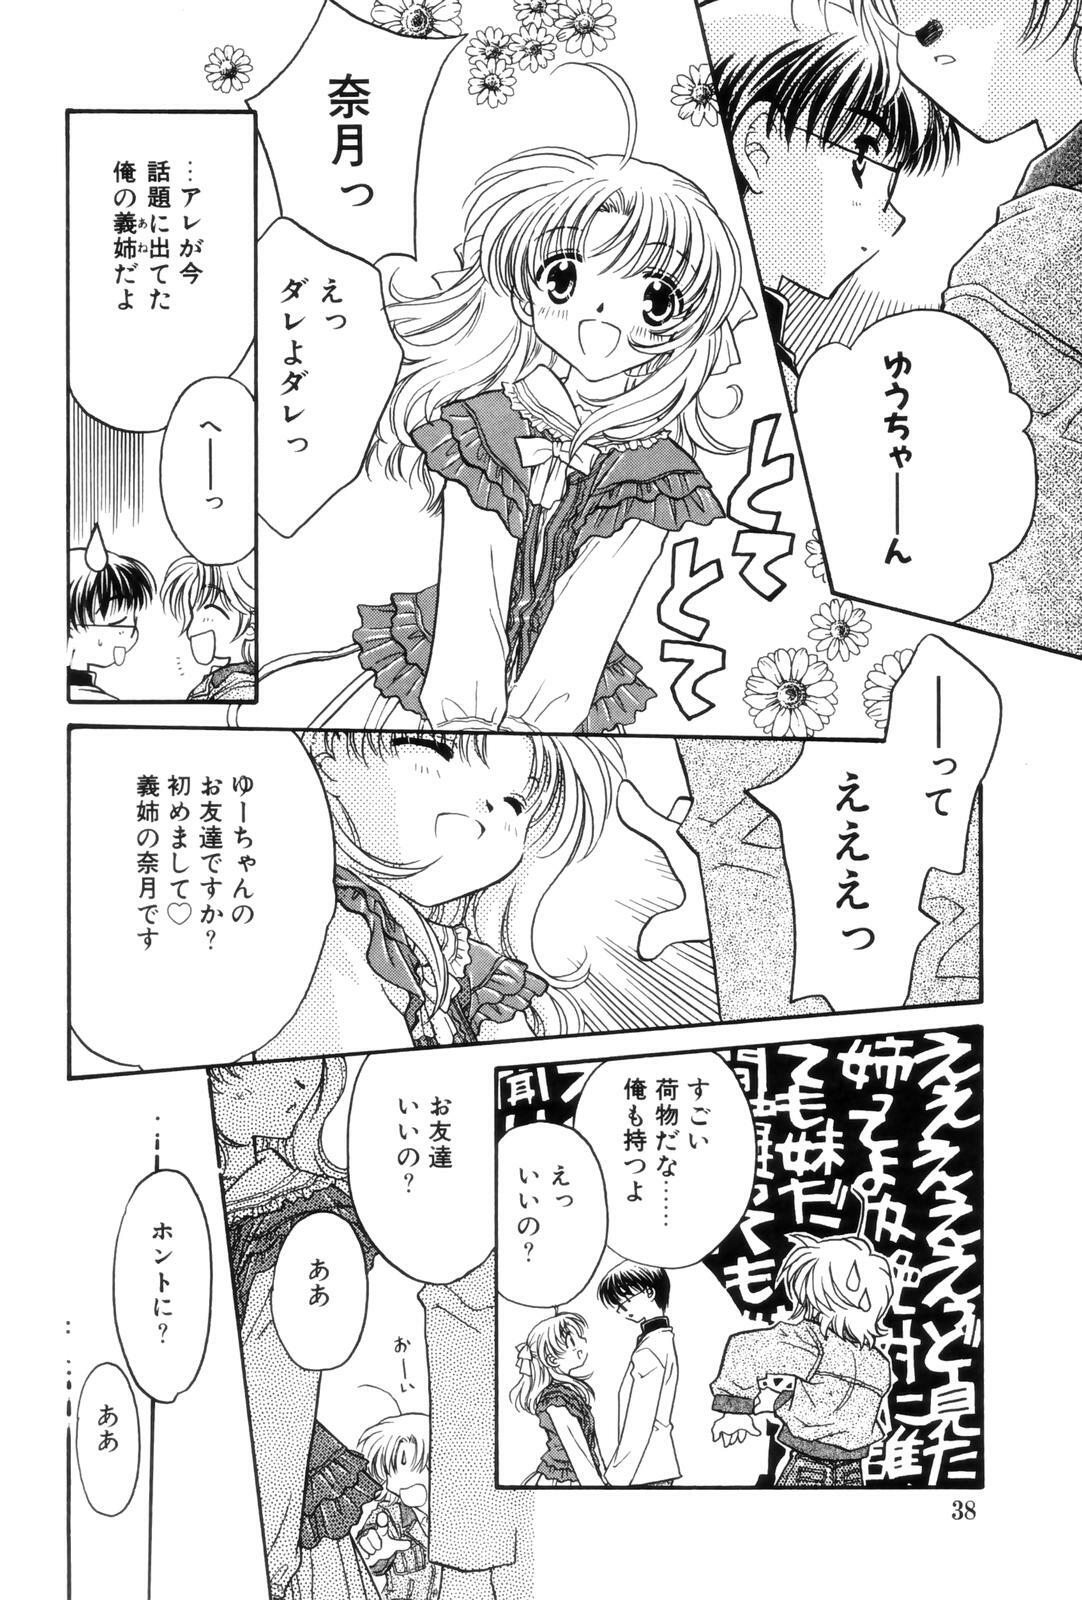 [Kamisato Takeharu] Kokuhaku -Tsutaeruomoi- page 38 full